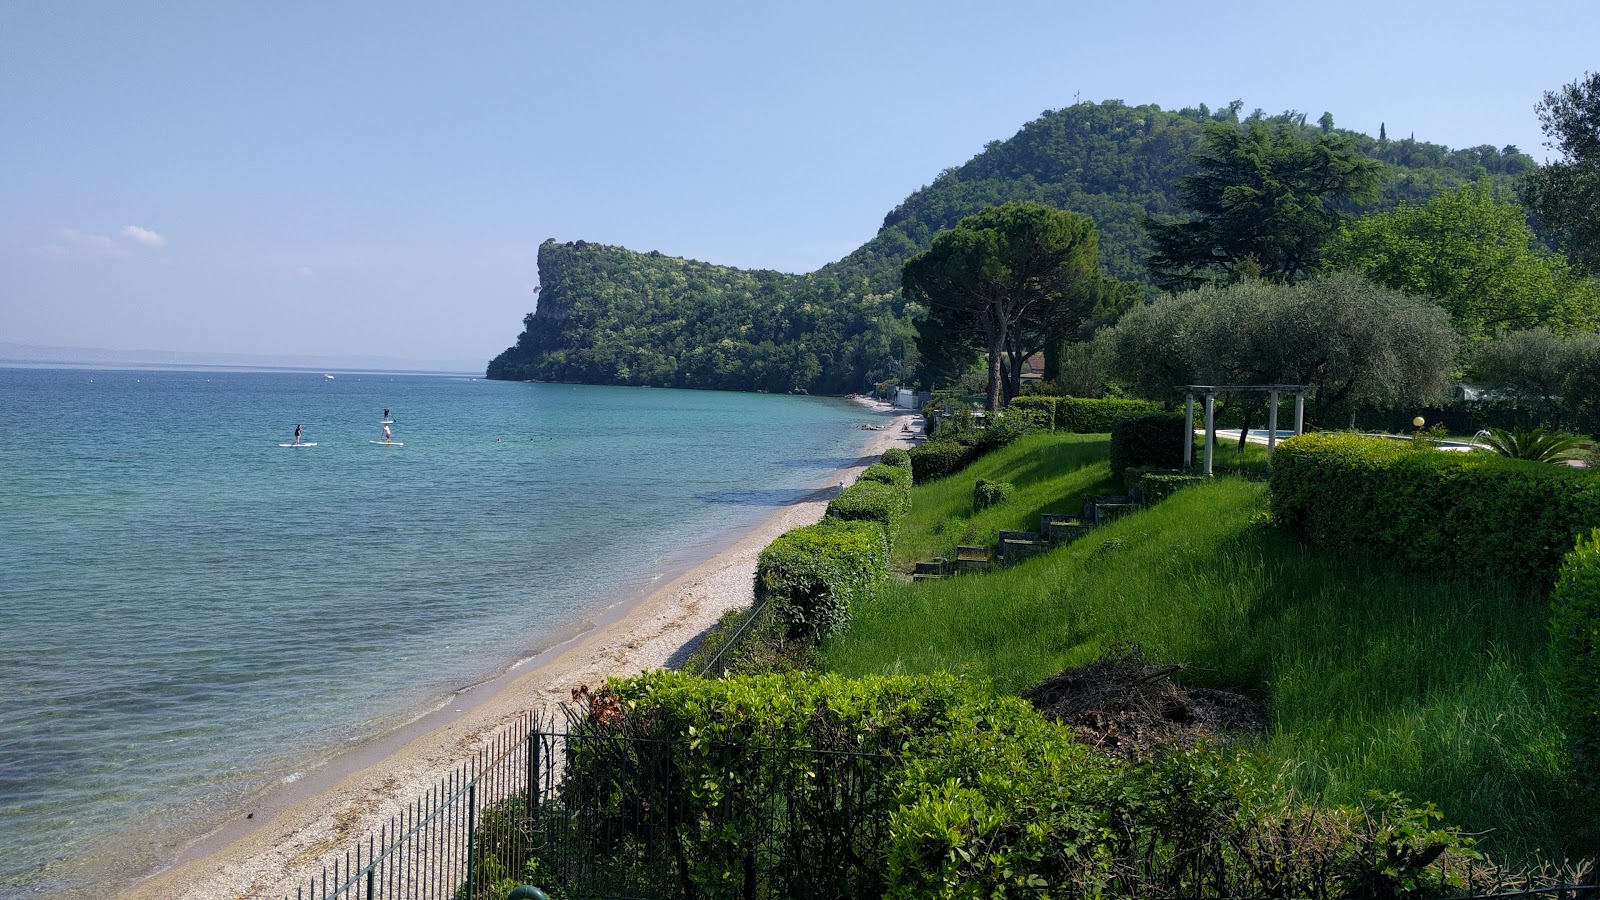 Valokuva Spiaggia Pisenzeista. ja sen kaunis maisema